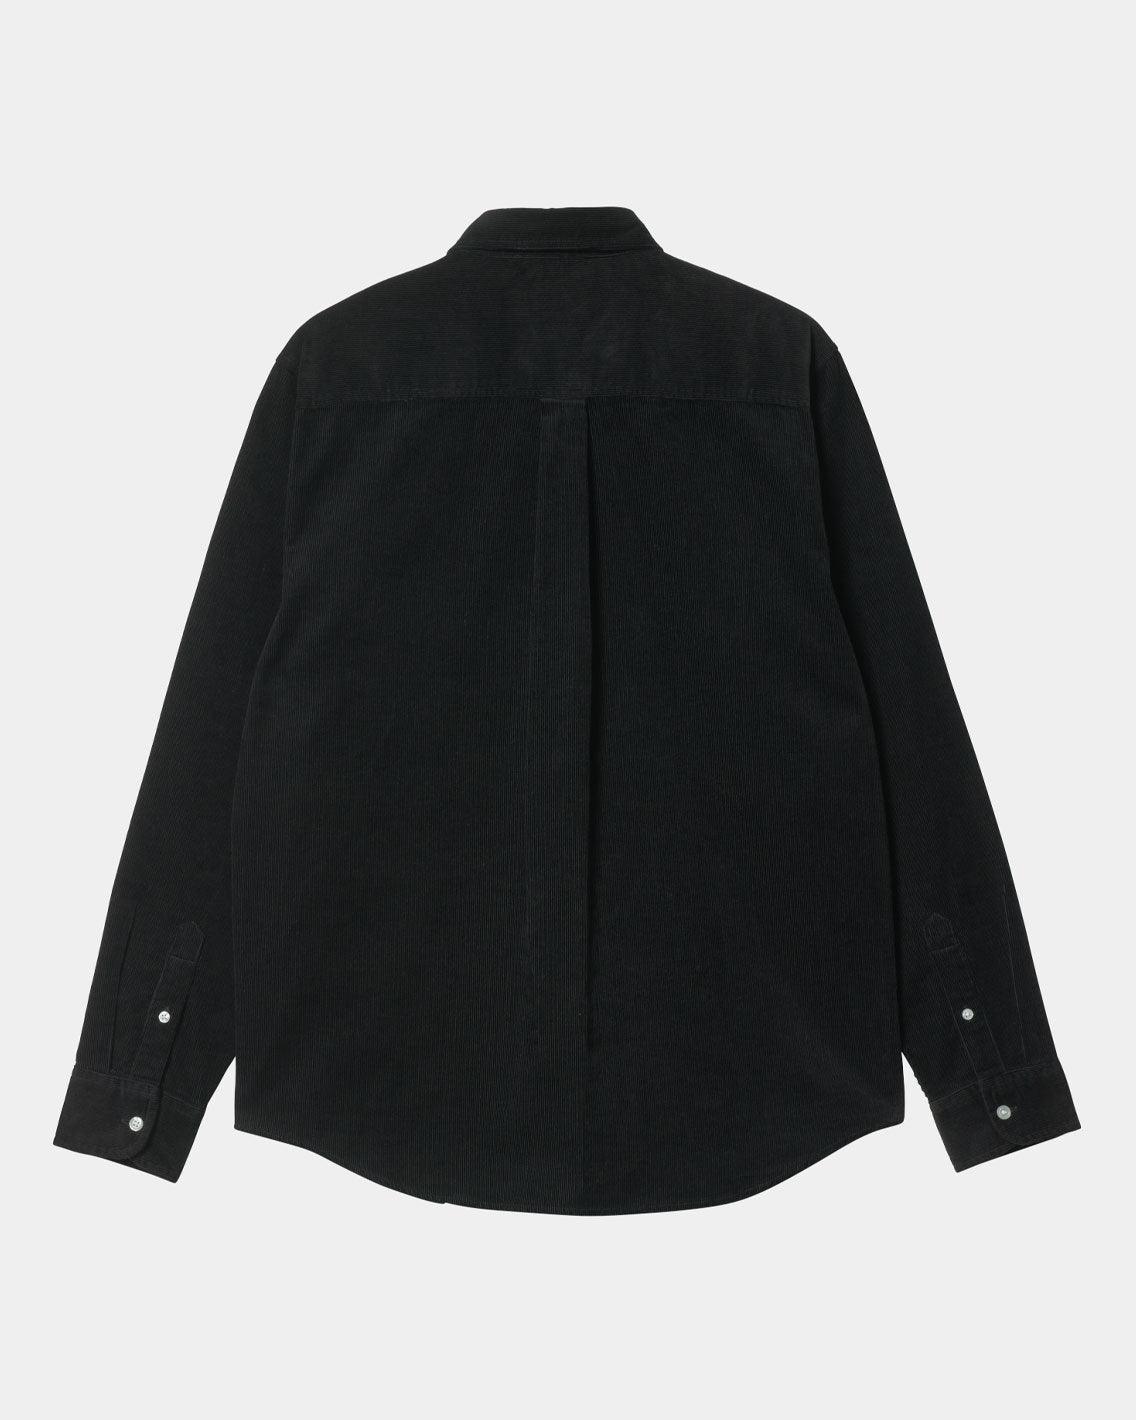 Carhartt - Madison L/S Fine Cord Shirt - Black / Wax Shirts Carhartt   